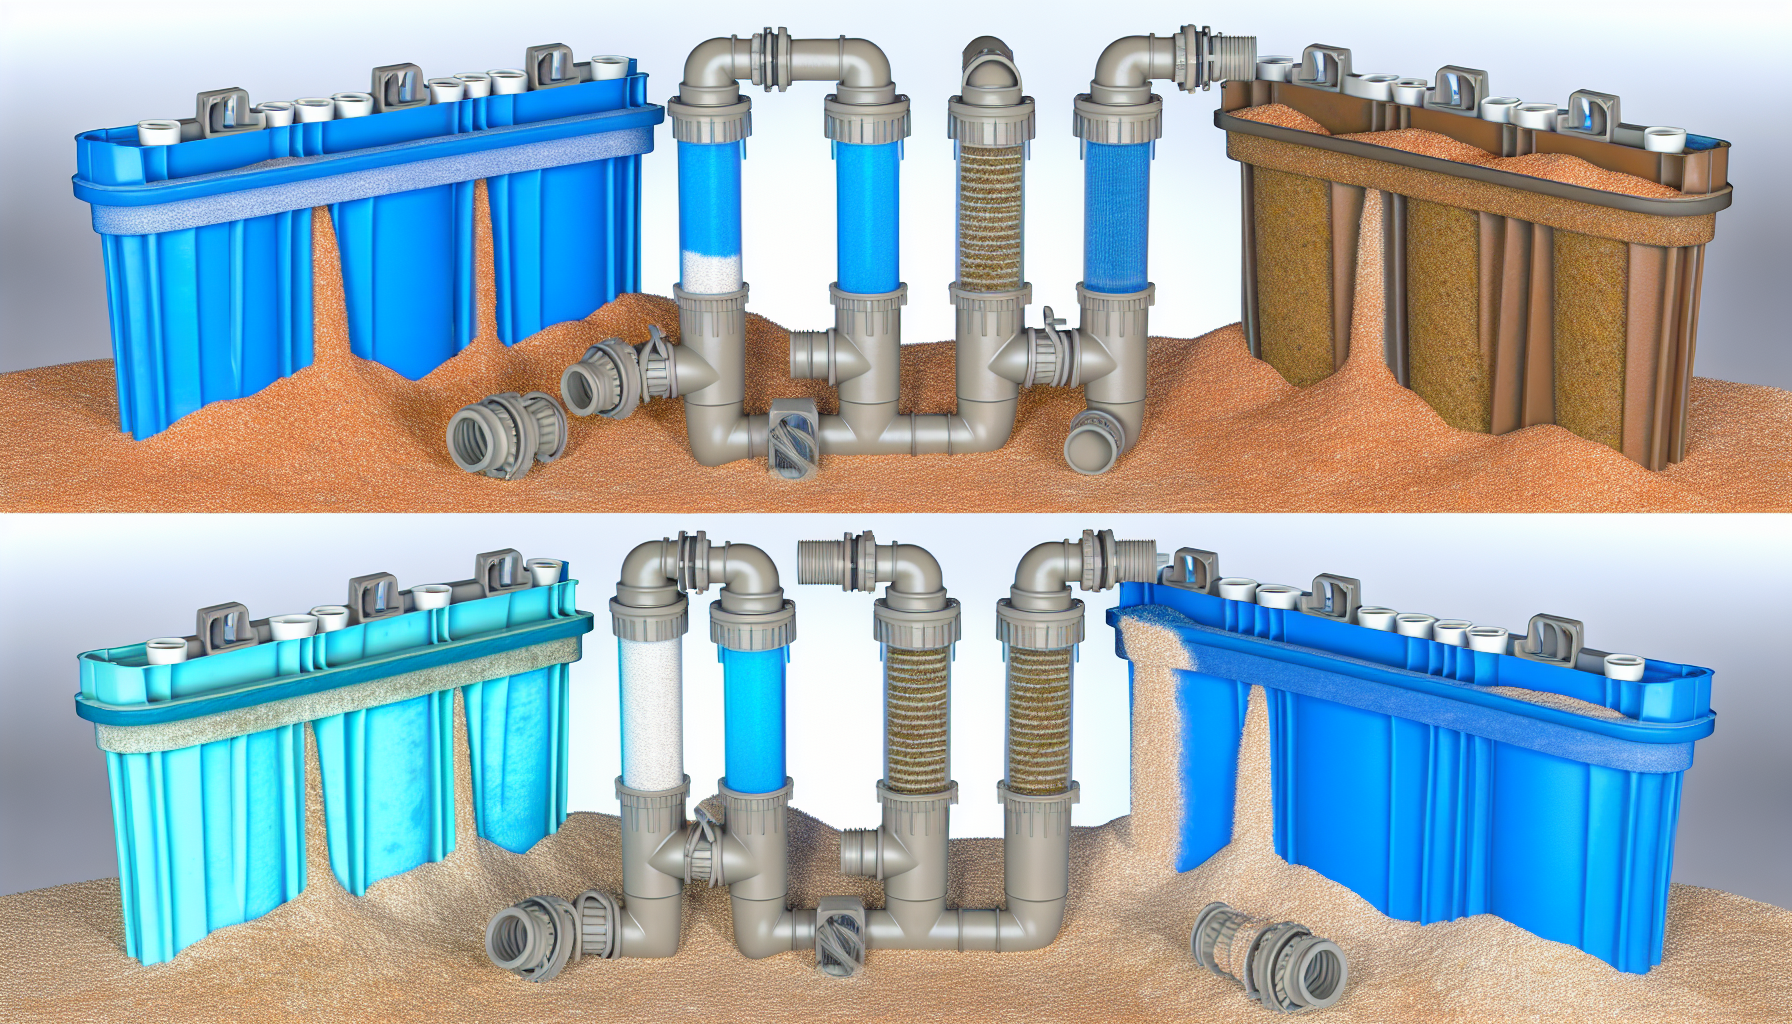 3D-Darstellung einer Wasserfiltrationsanlage mit Rohren und Filtern, sowohl neu als auch im gebrauchten Zustand.